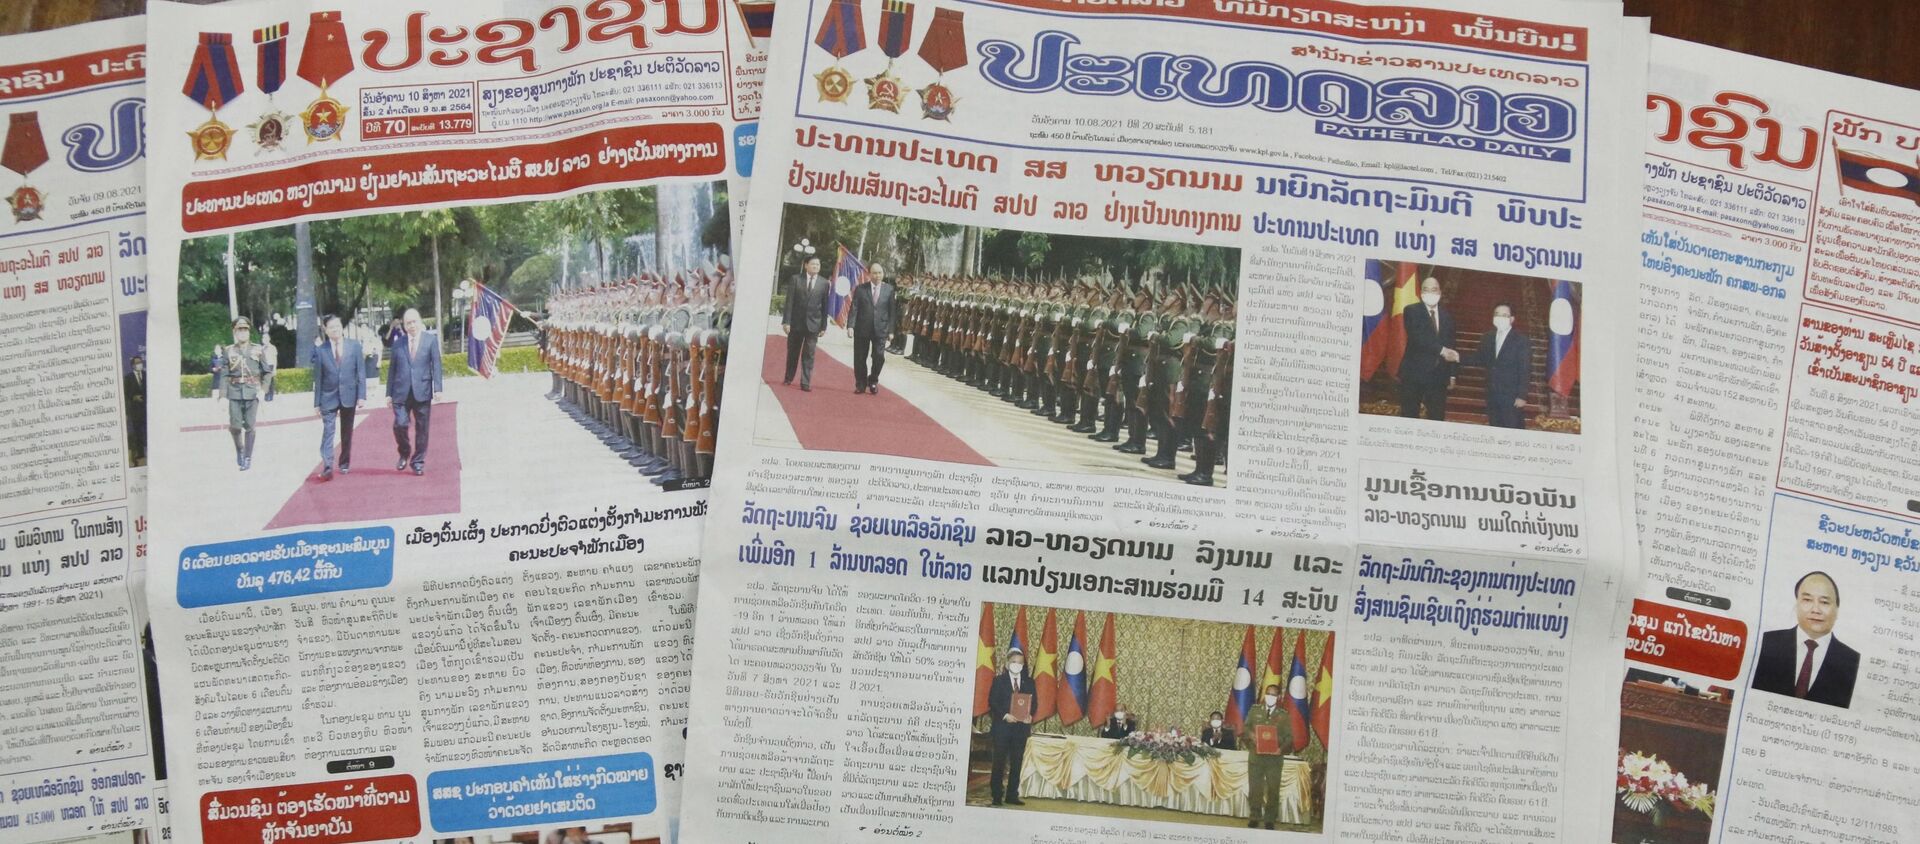 Báo chí Lào đưa tin đậm nét về chuyến thăm hữu nghị chính thức của Chủ tịch Nguyễn Xuân Phúc - Sputnik Việt Nam, 1920, 11.08.2021